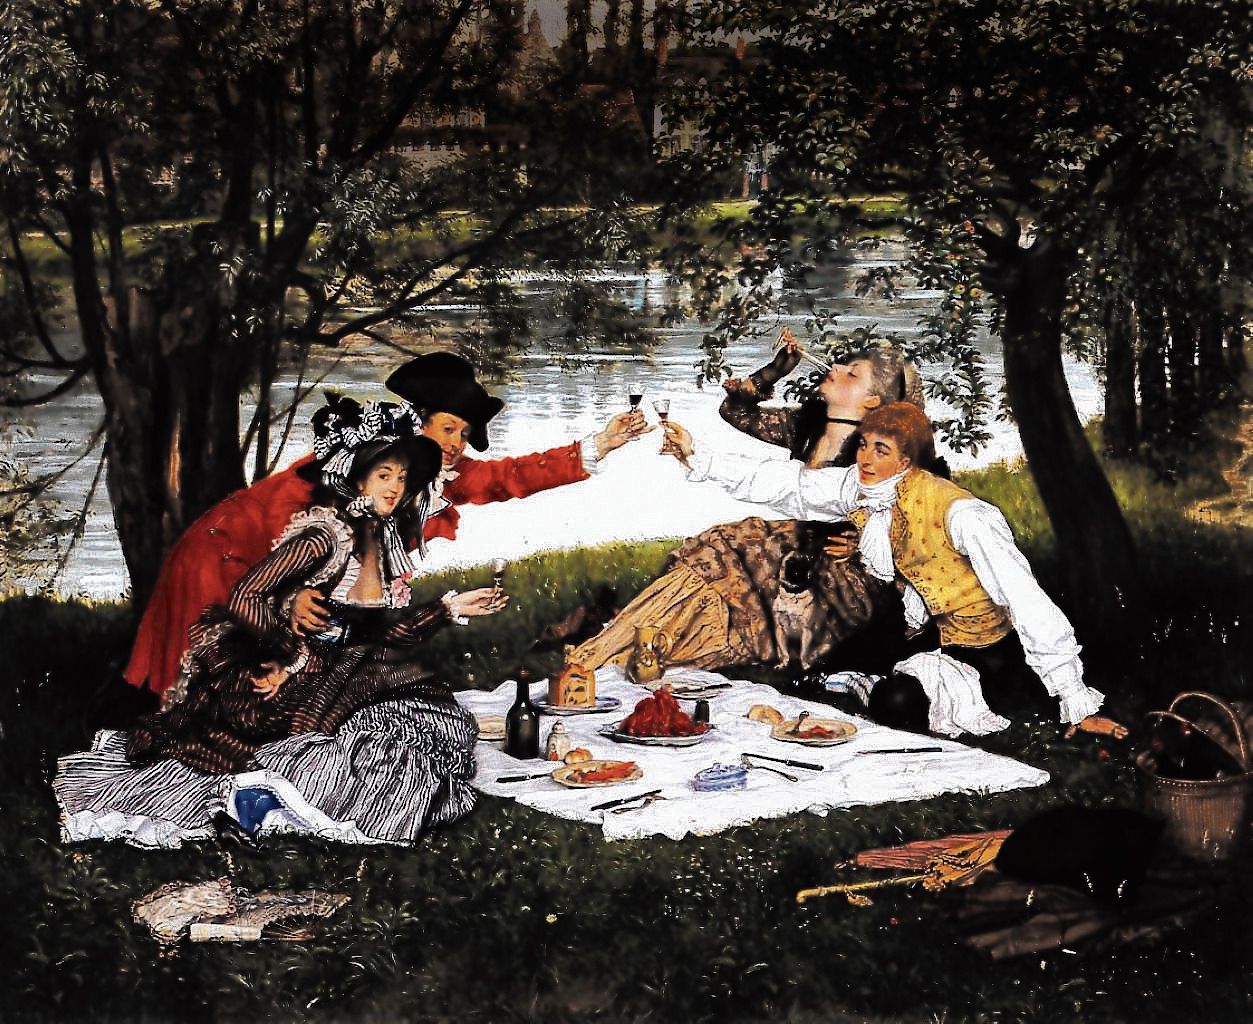 La Partie Carrée, schilderij van een picknick, van de Franse kunstschilder James Tissot uit 1870.